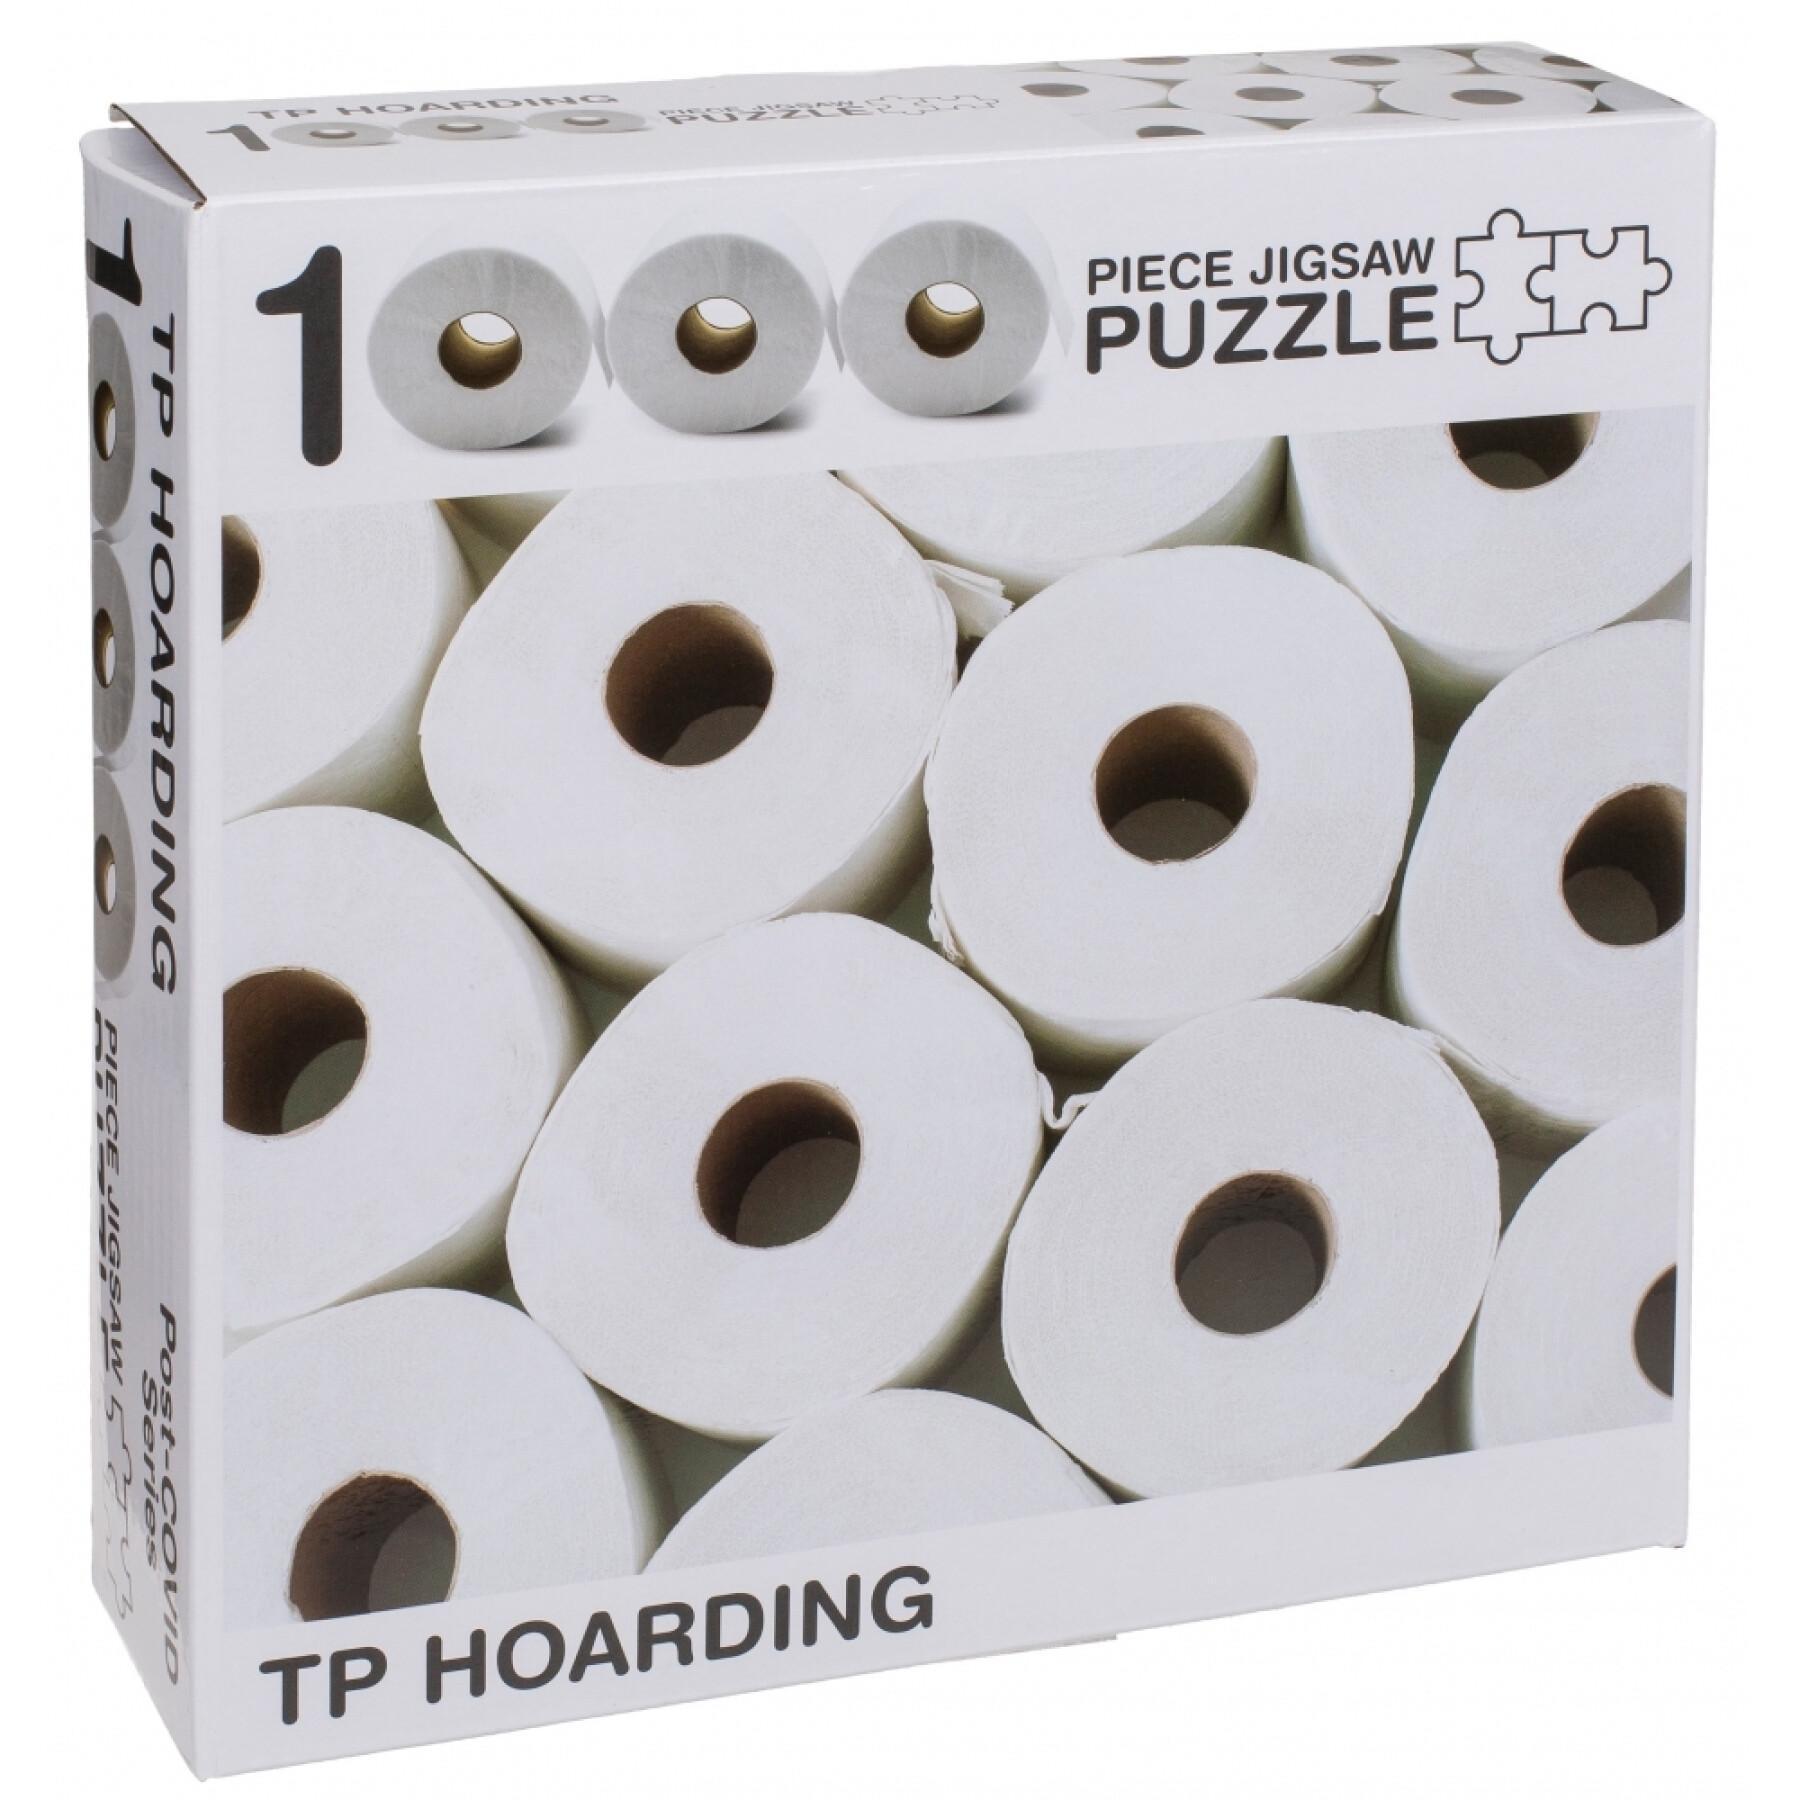 Puzzle de 1000 peças de puzzle com rolos de papel higiénico OOTB